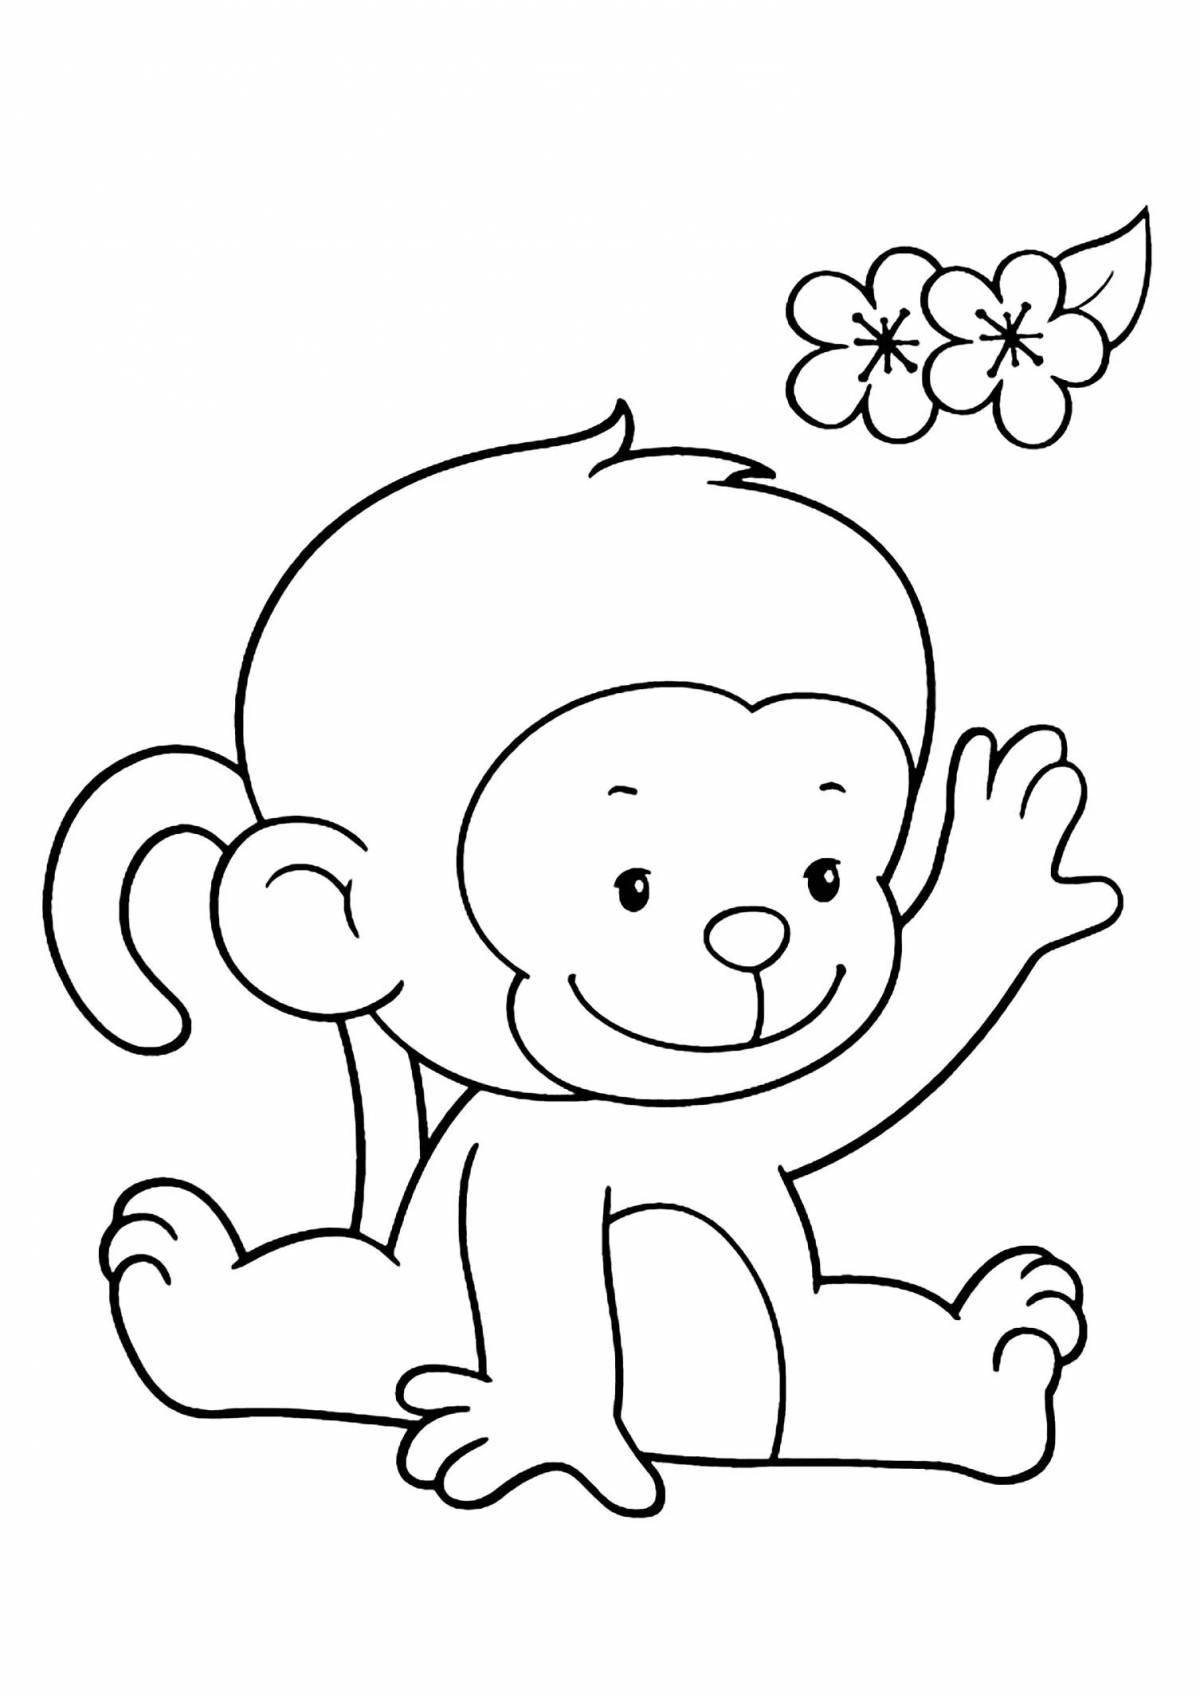 Радостный рисунок обезьяны для детей